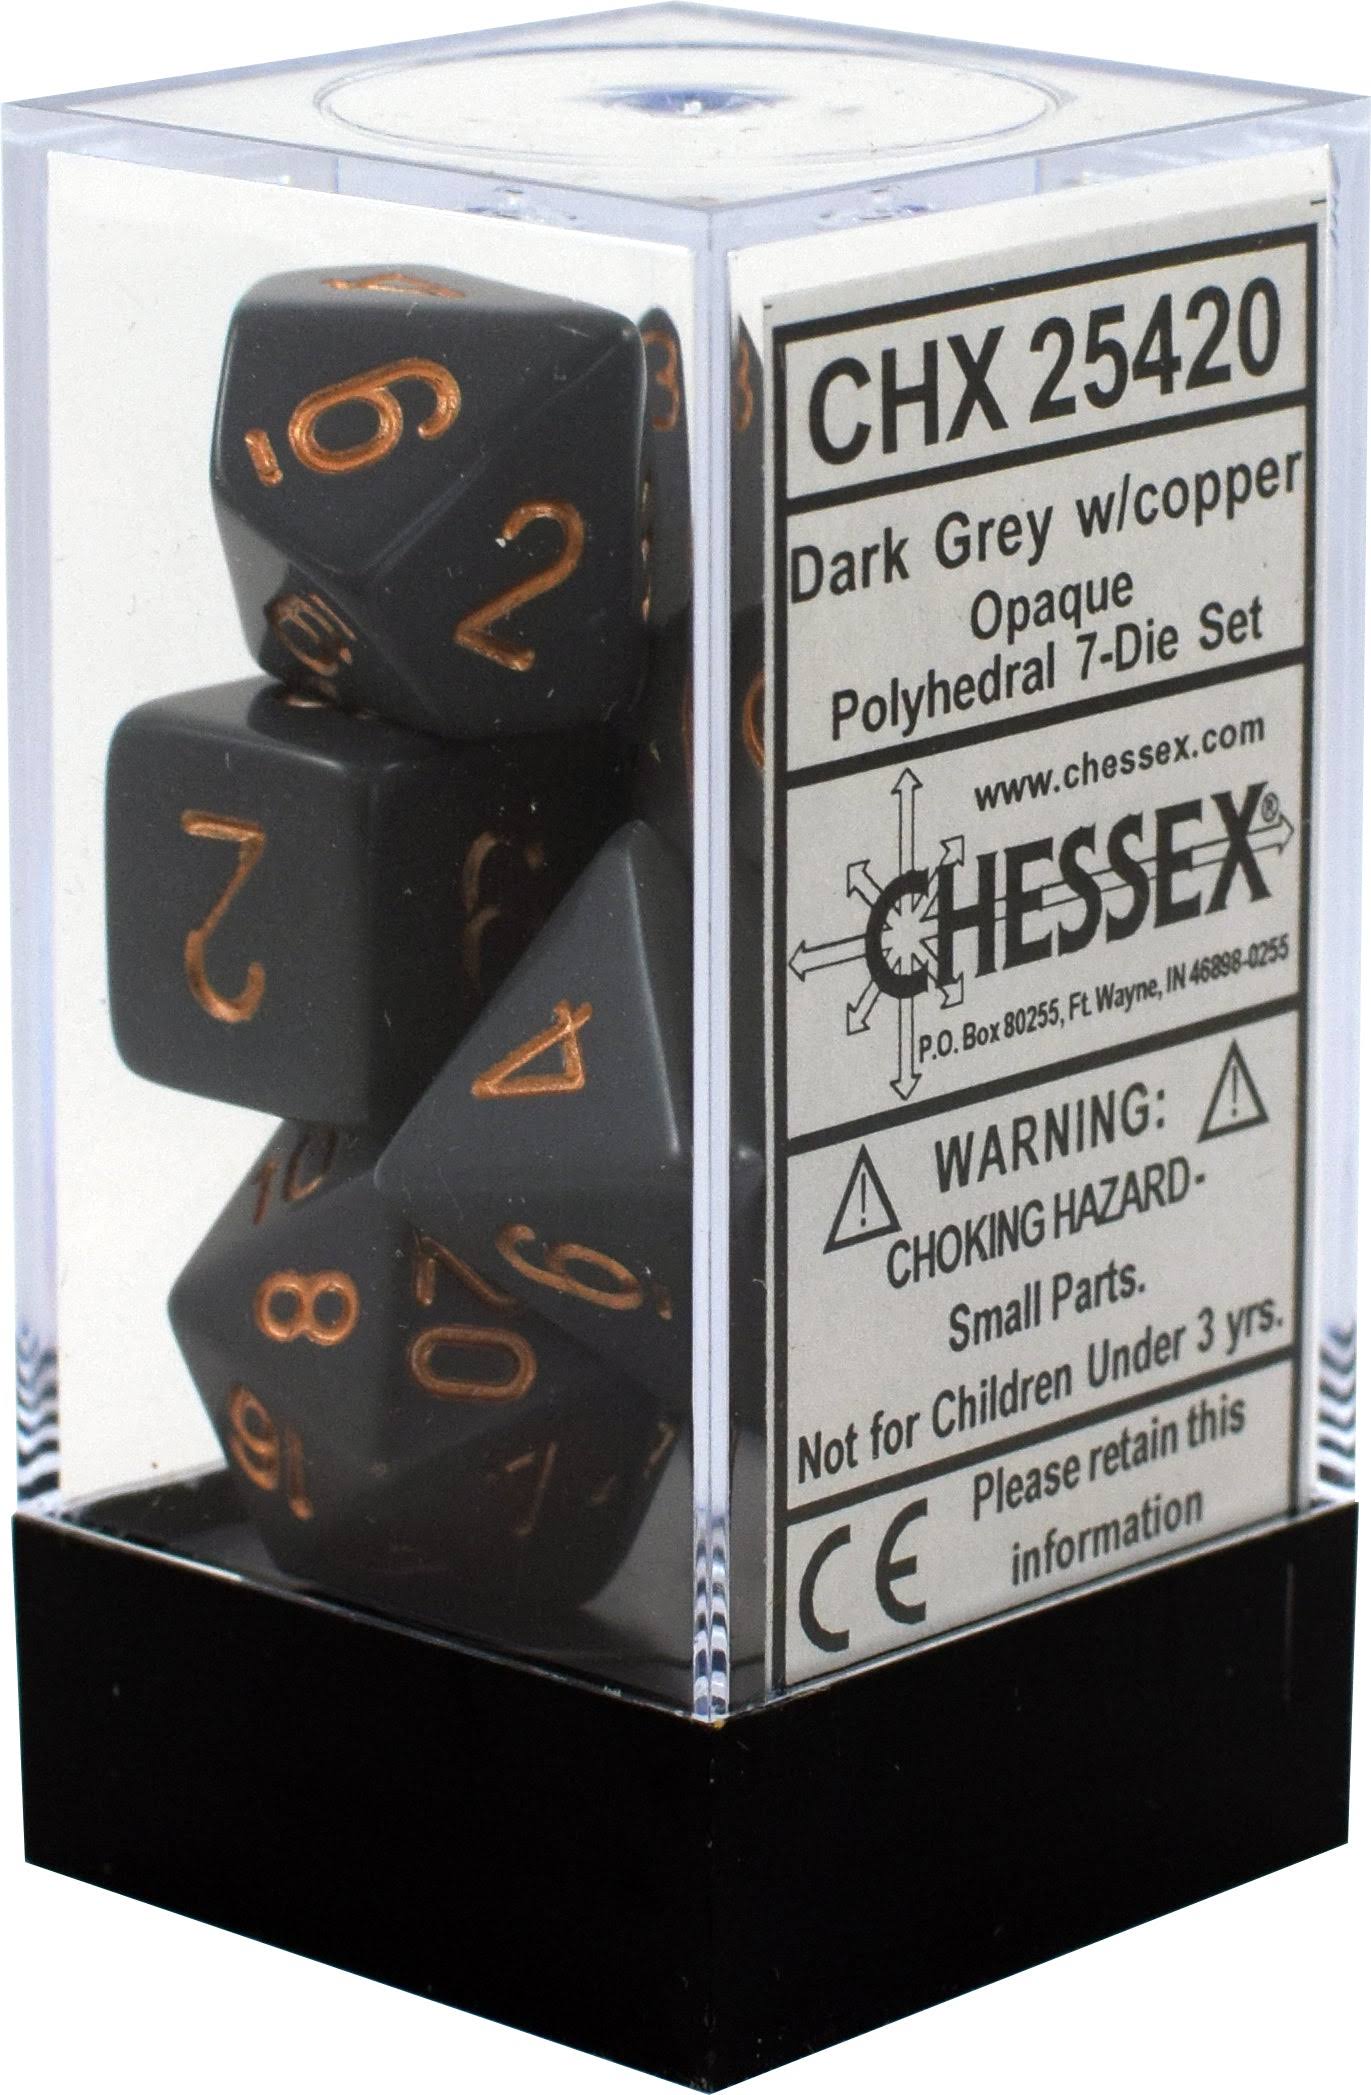 Chessex Polyhedral 7-Die Set Opaque Dark Grey/Copper